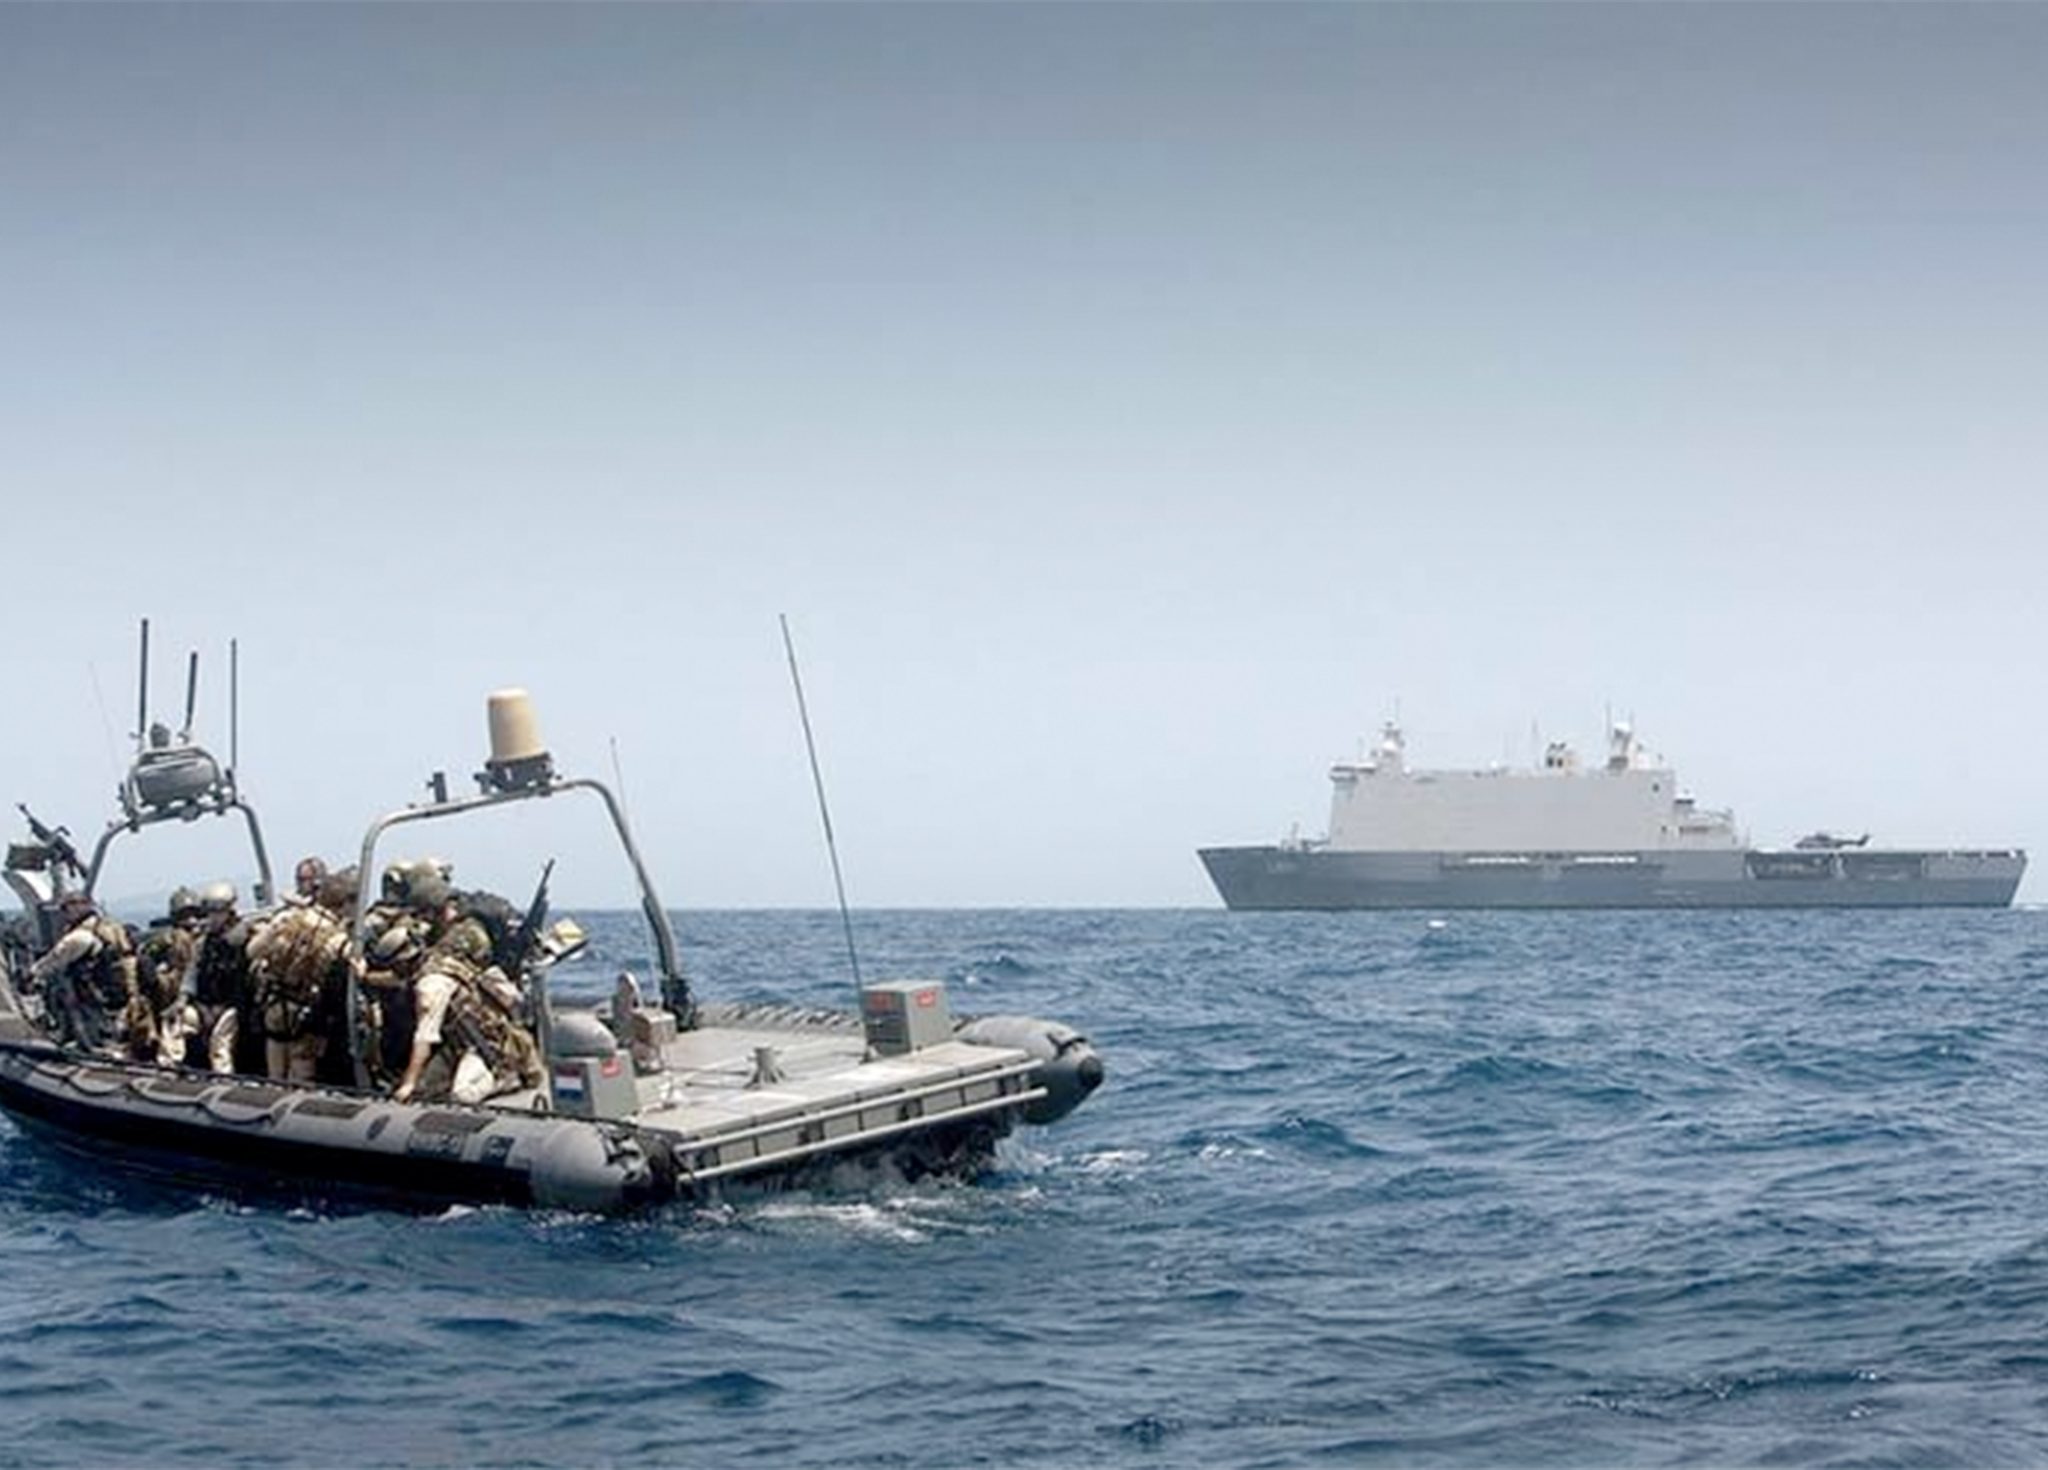 Het Zr. Ms. Johan de Witt op een anti piraterij missie in de Golf van Aden (Foto Ministerie van Defensie)